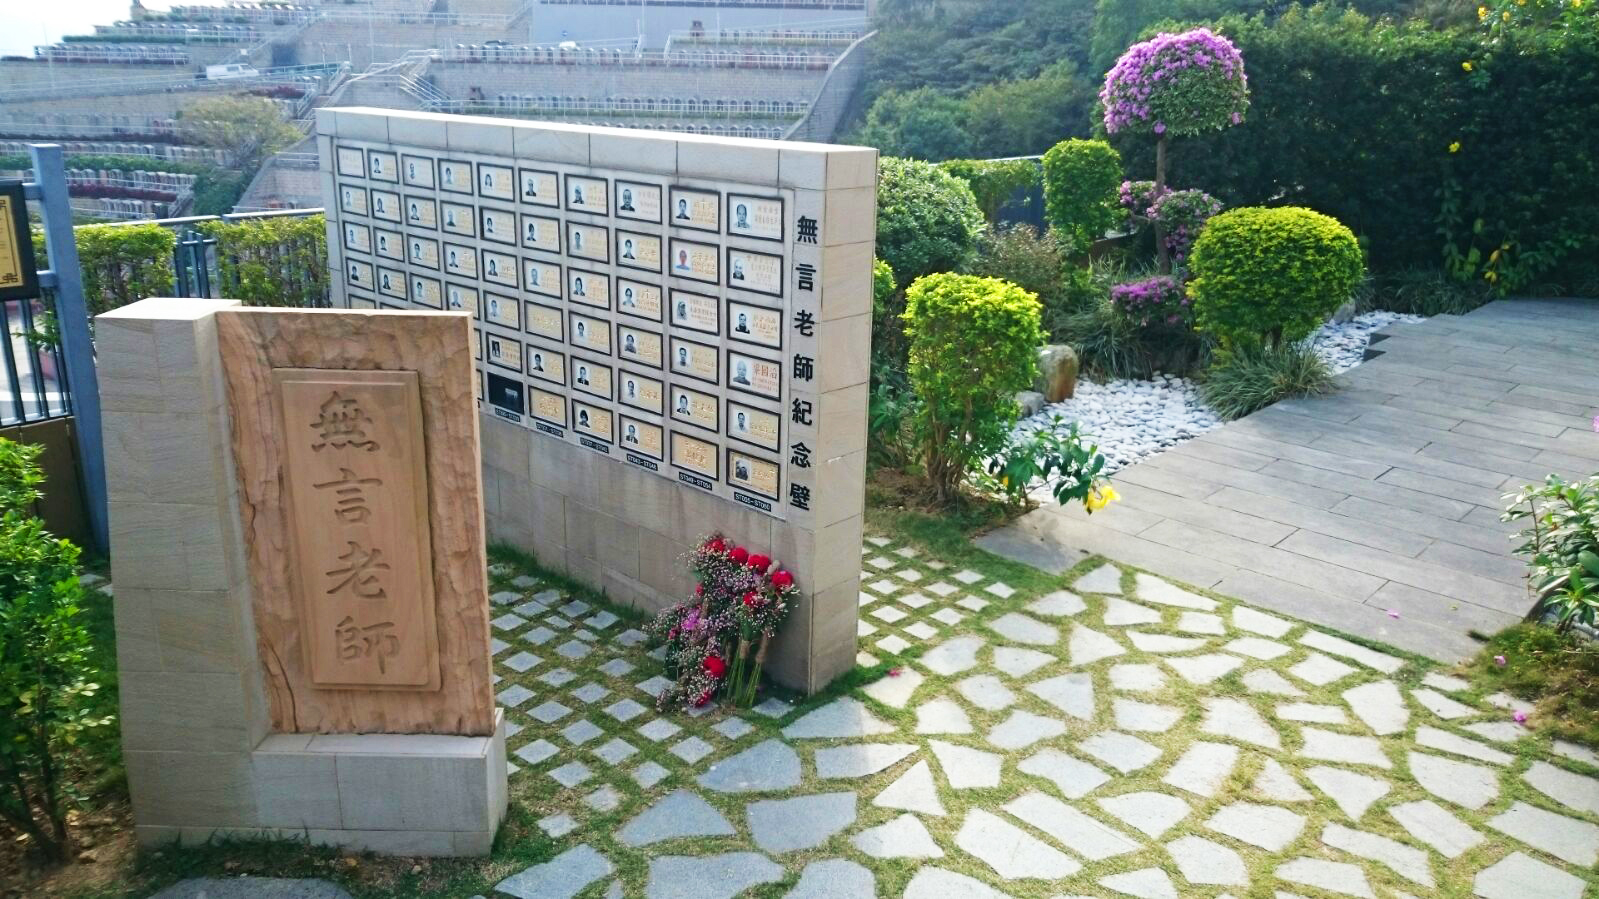 將軍澳紀念花園設立遺體捐贈者專用紀念牆，表掦「無言老師」貢獻醫學研究的無私精神。